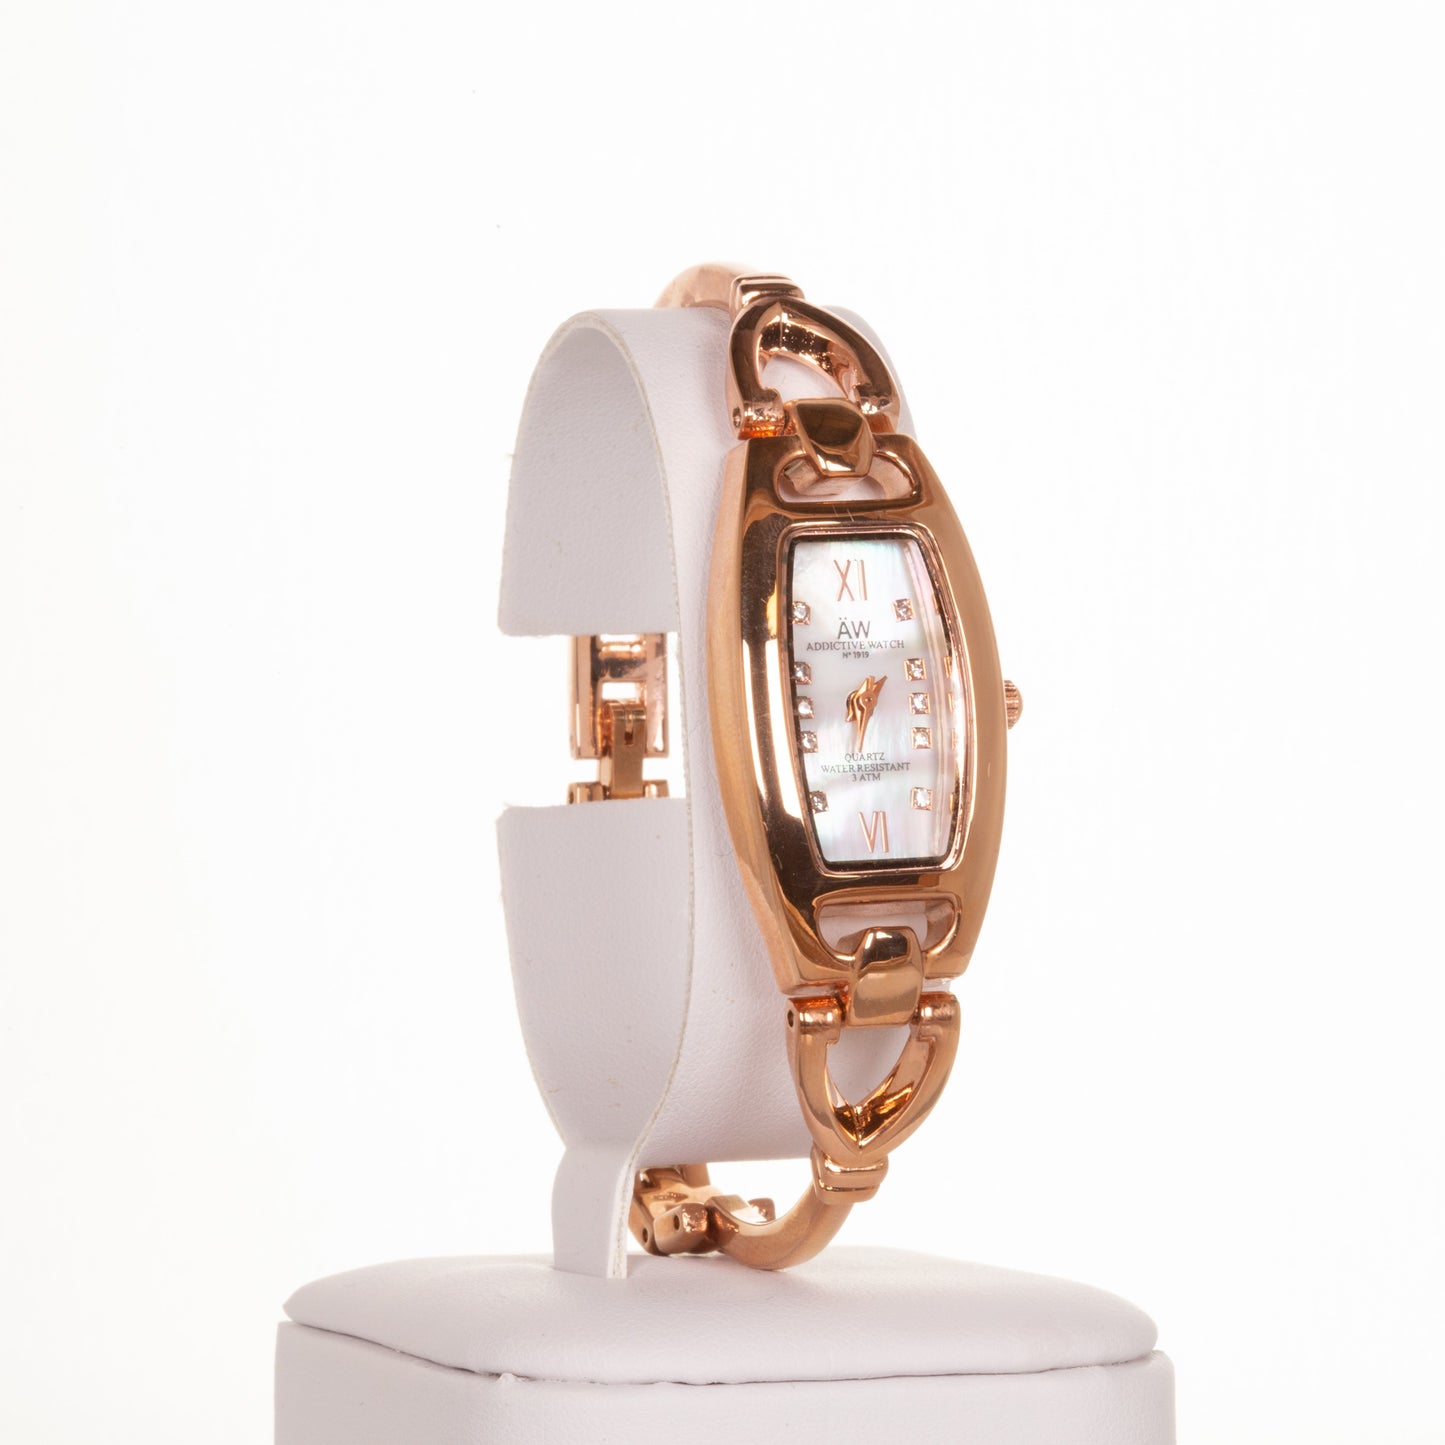 AW Relógio feminino Banhado a liga de Ouro Rosa com pulseira triangular fina e cristais de quartzo